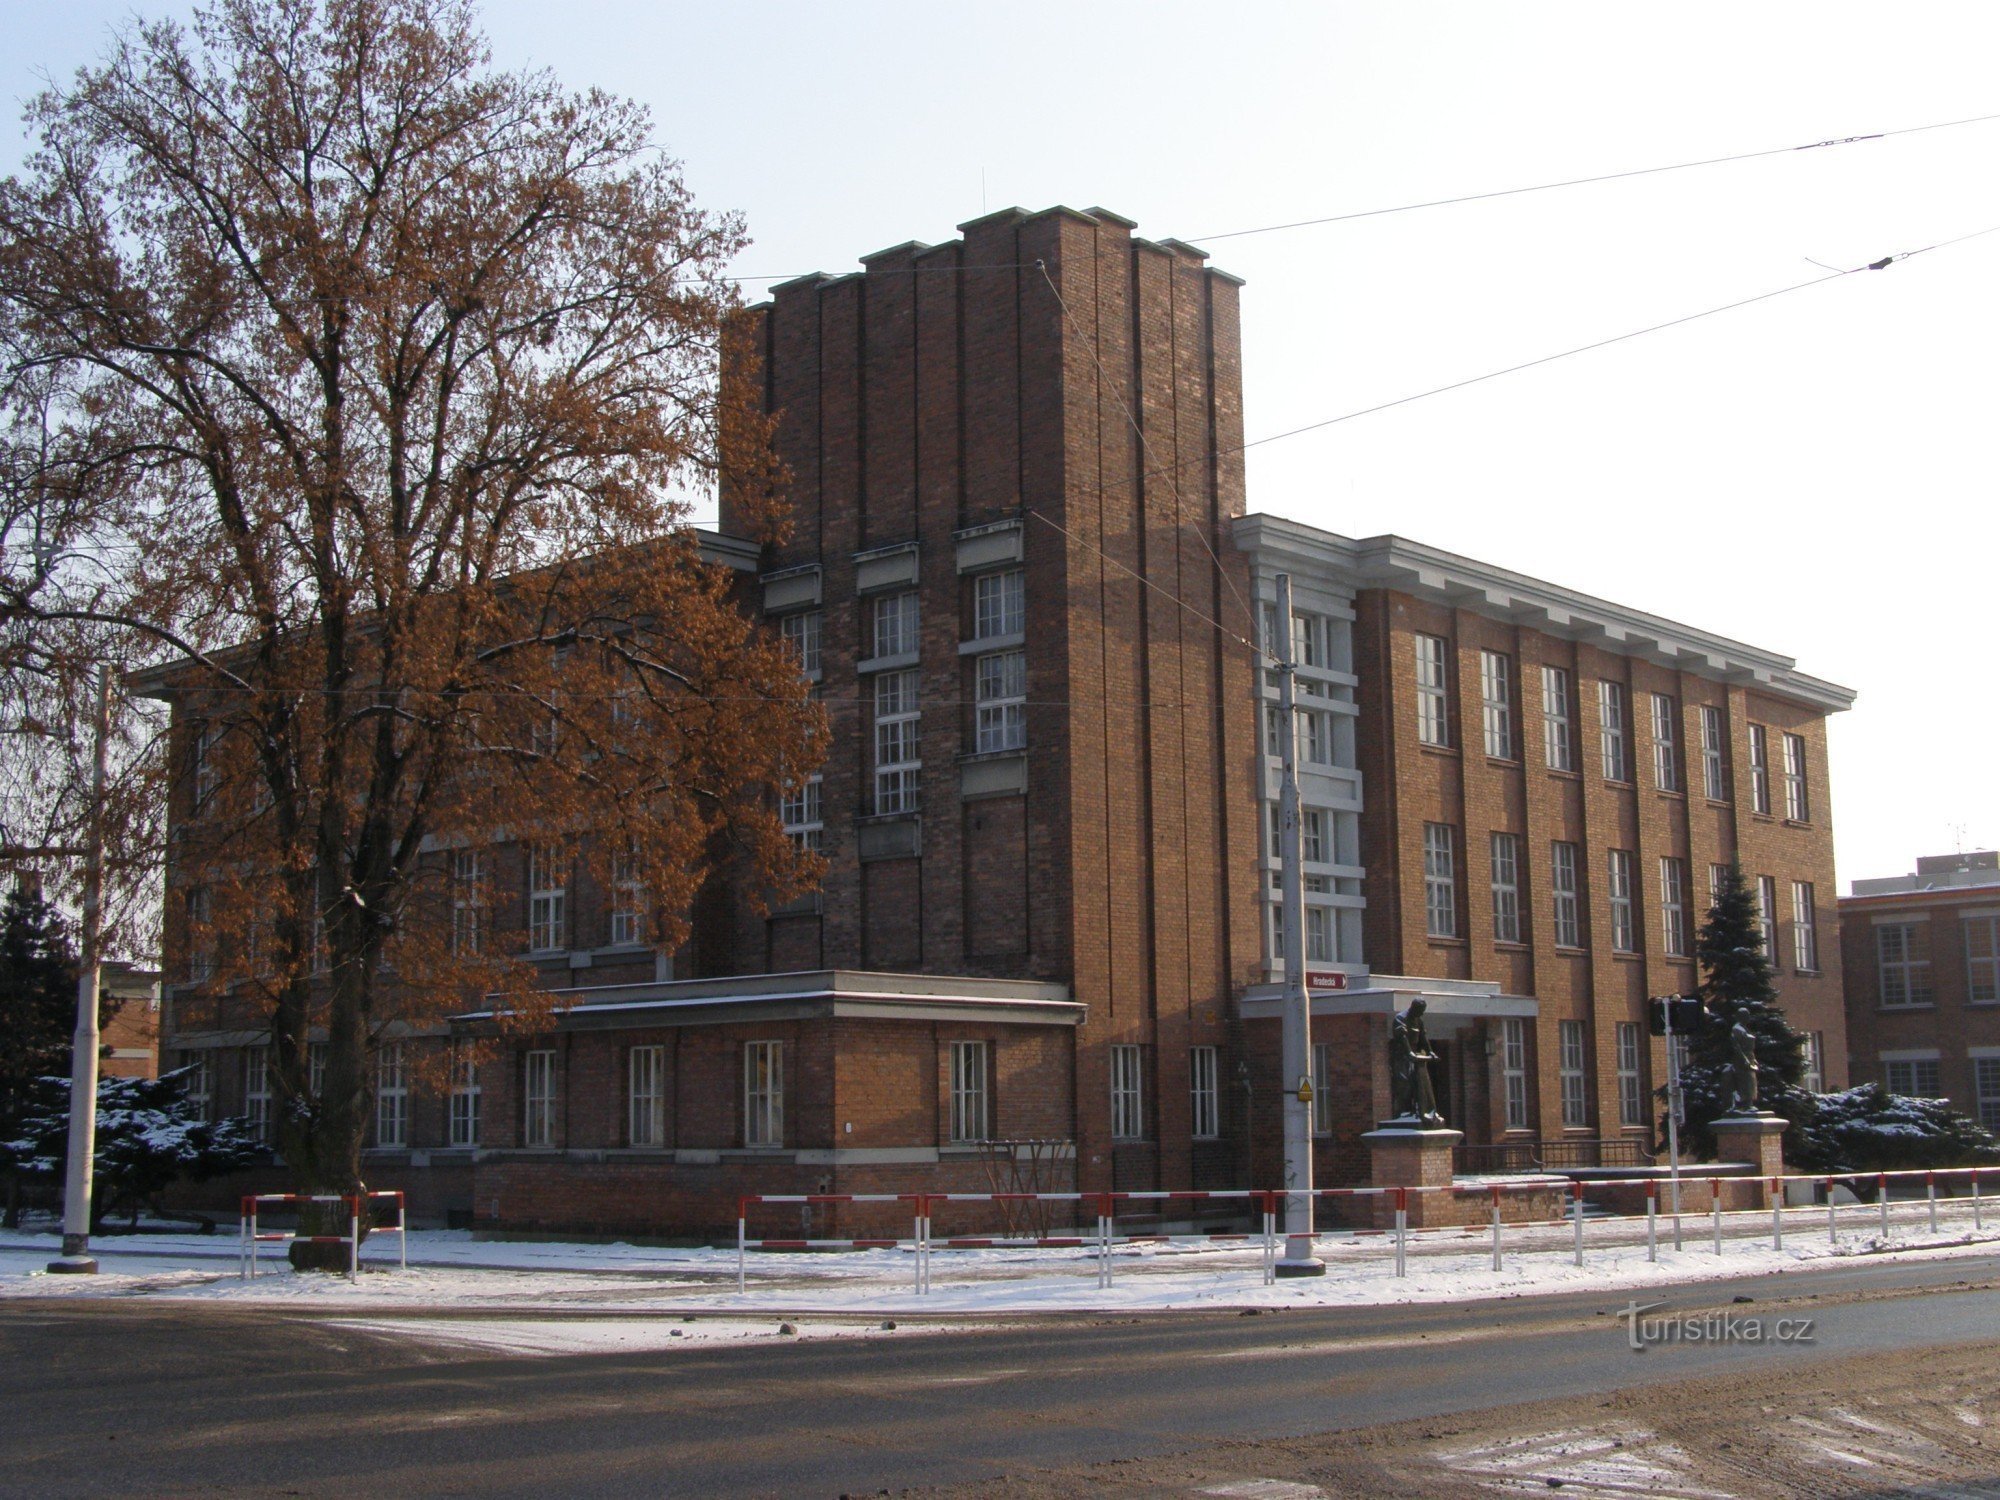 Hradec Králové - Gočárin entinen Koželužin koulu